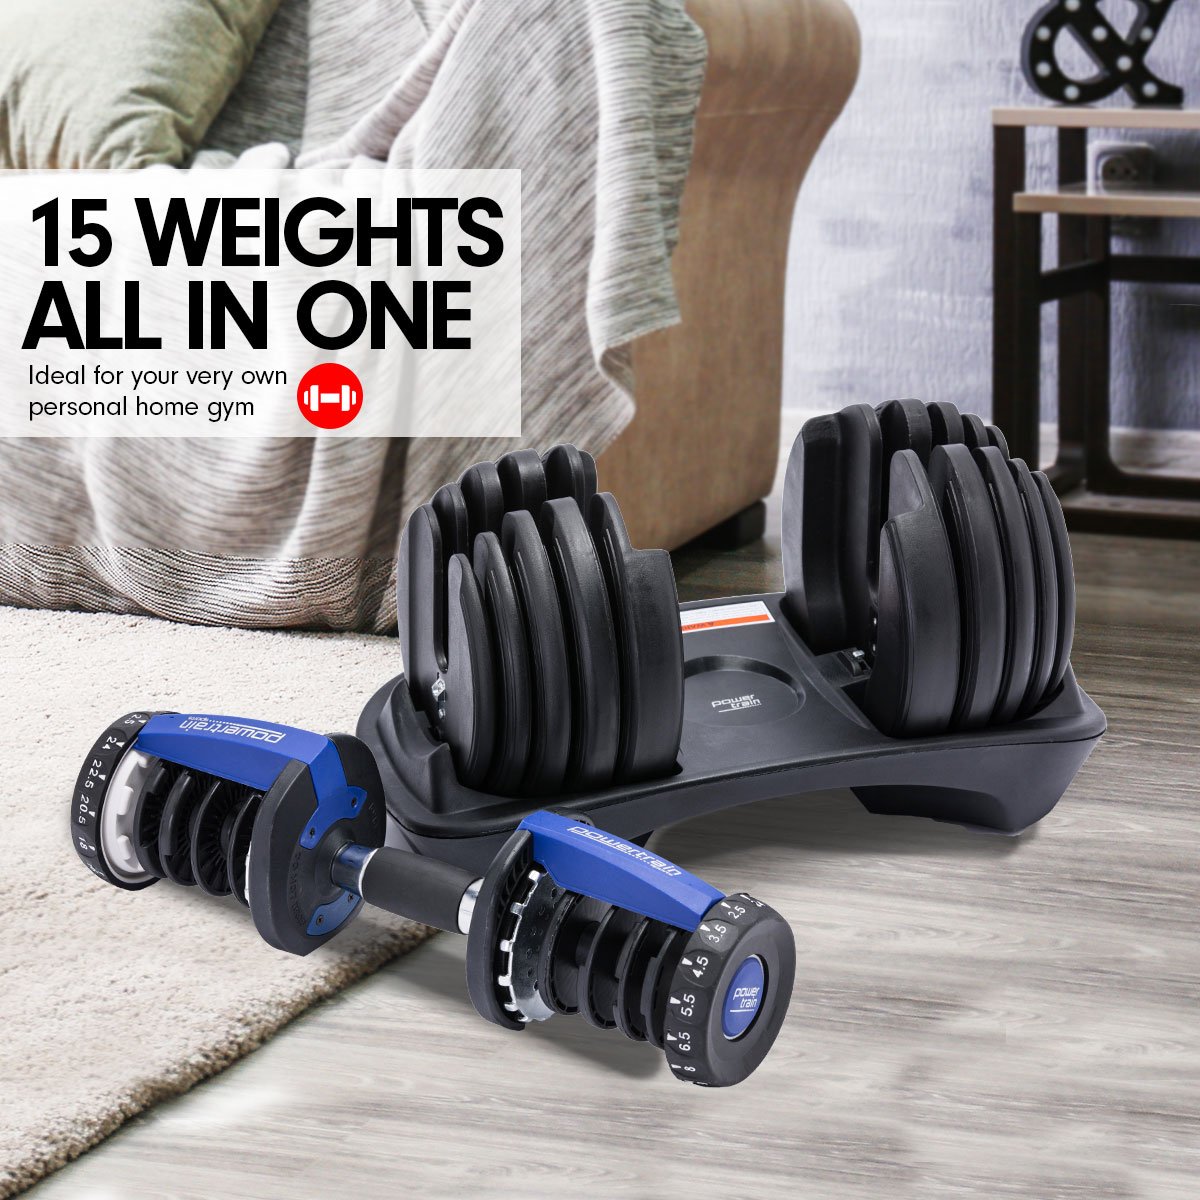 48kg Powertrain Adjustable Dumbbell Home Gym Set - Blue